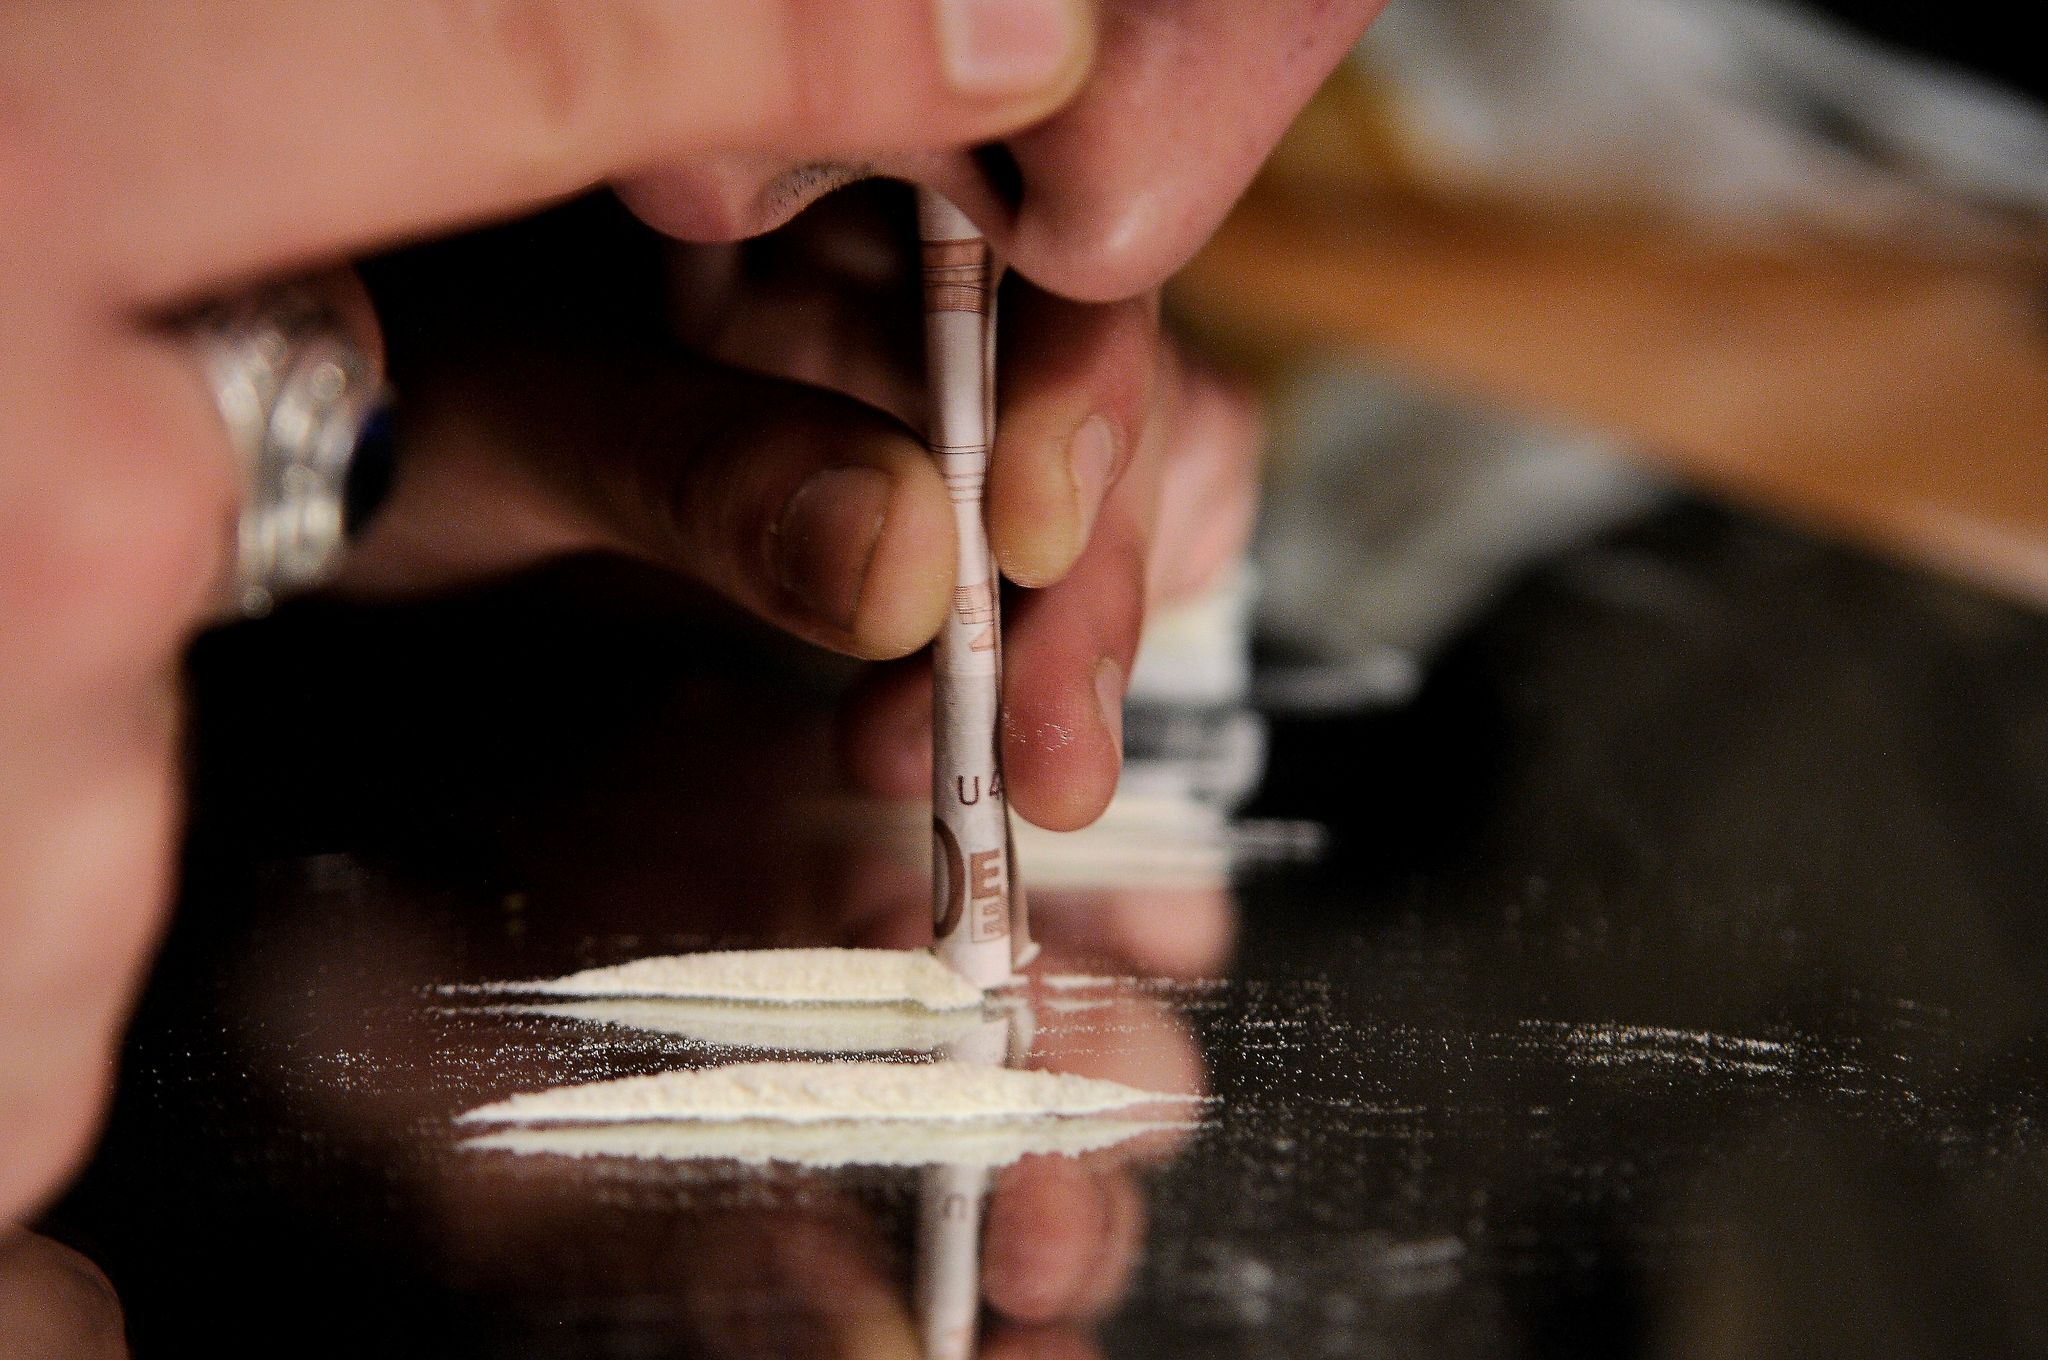 La production de cocaïne au plus haut dans le monde